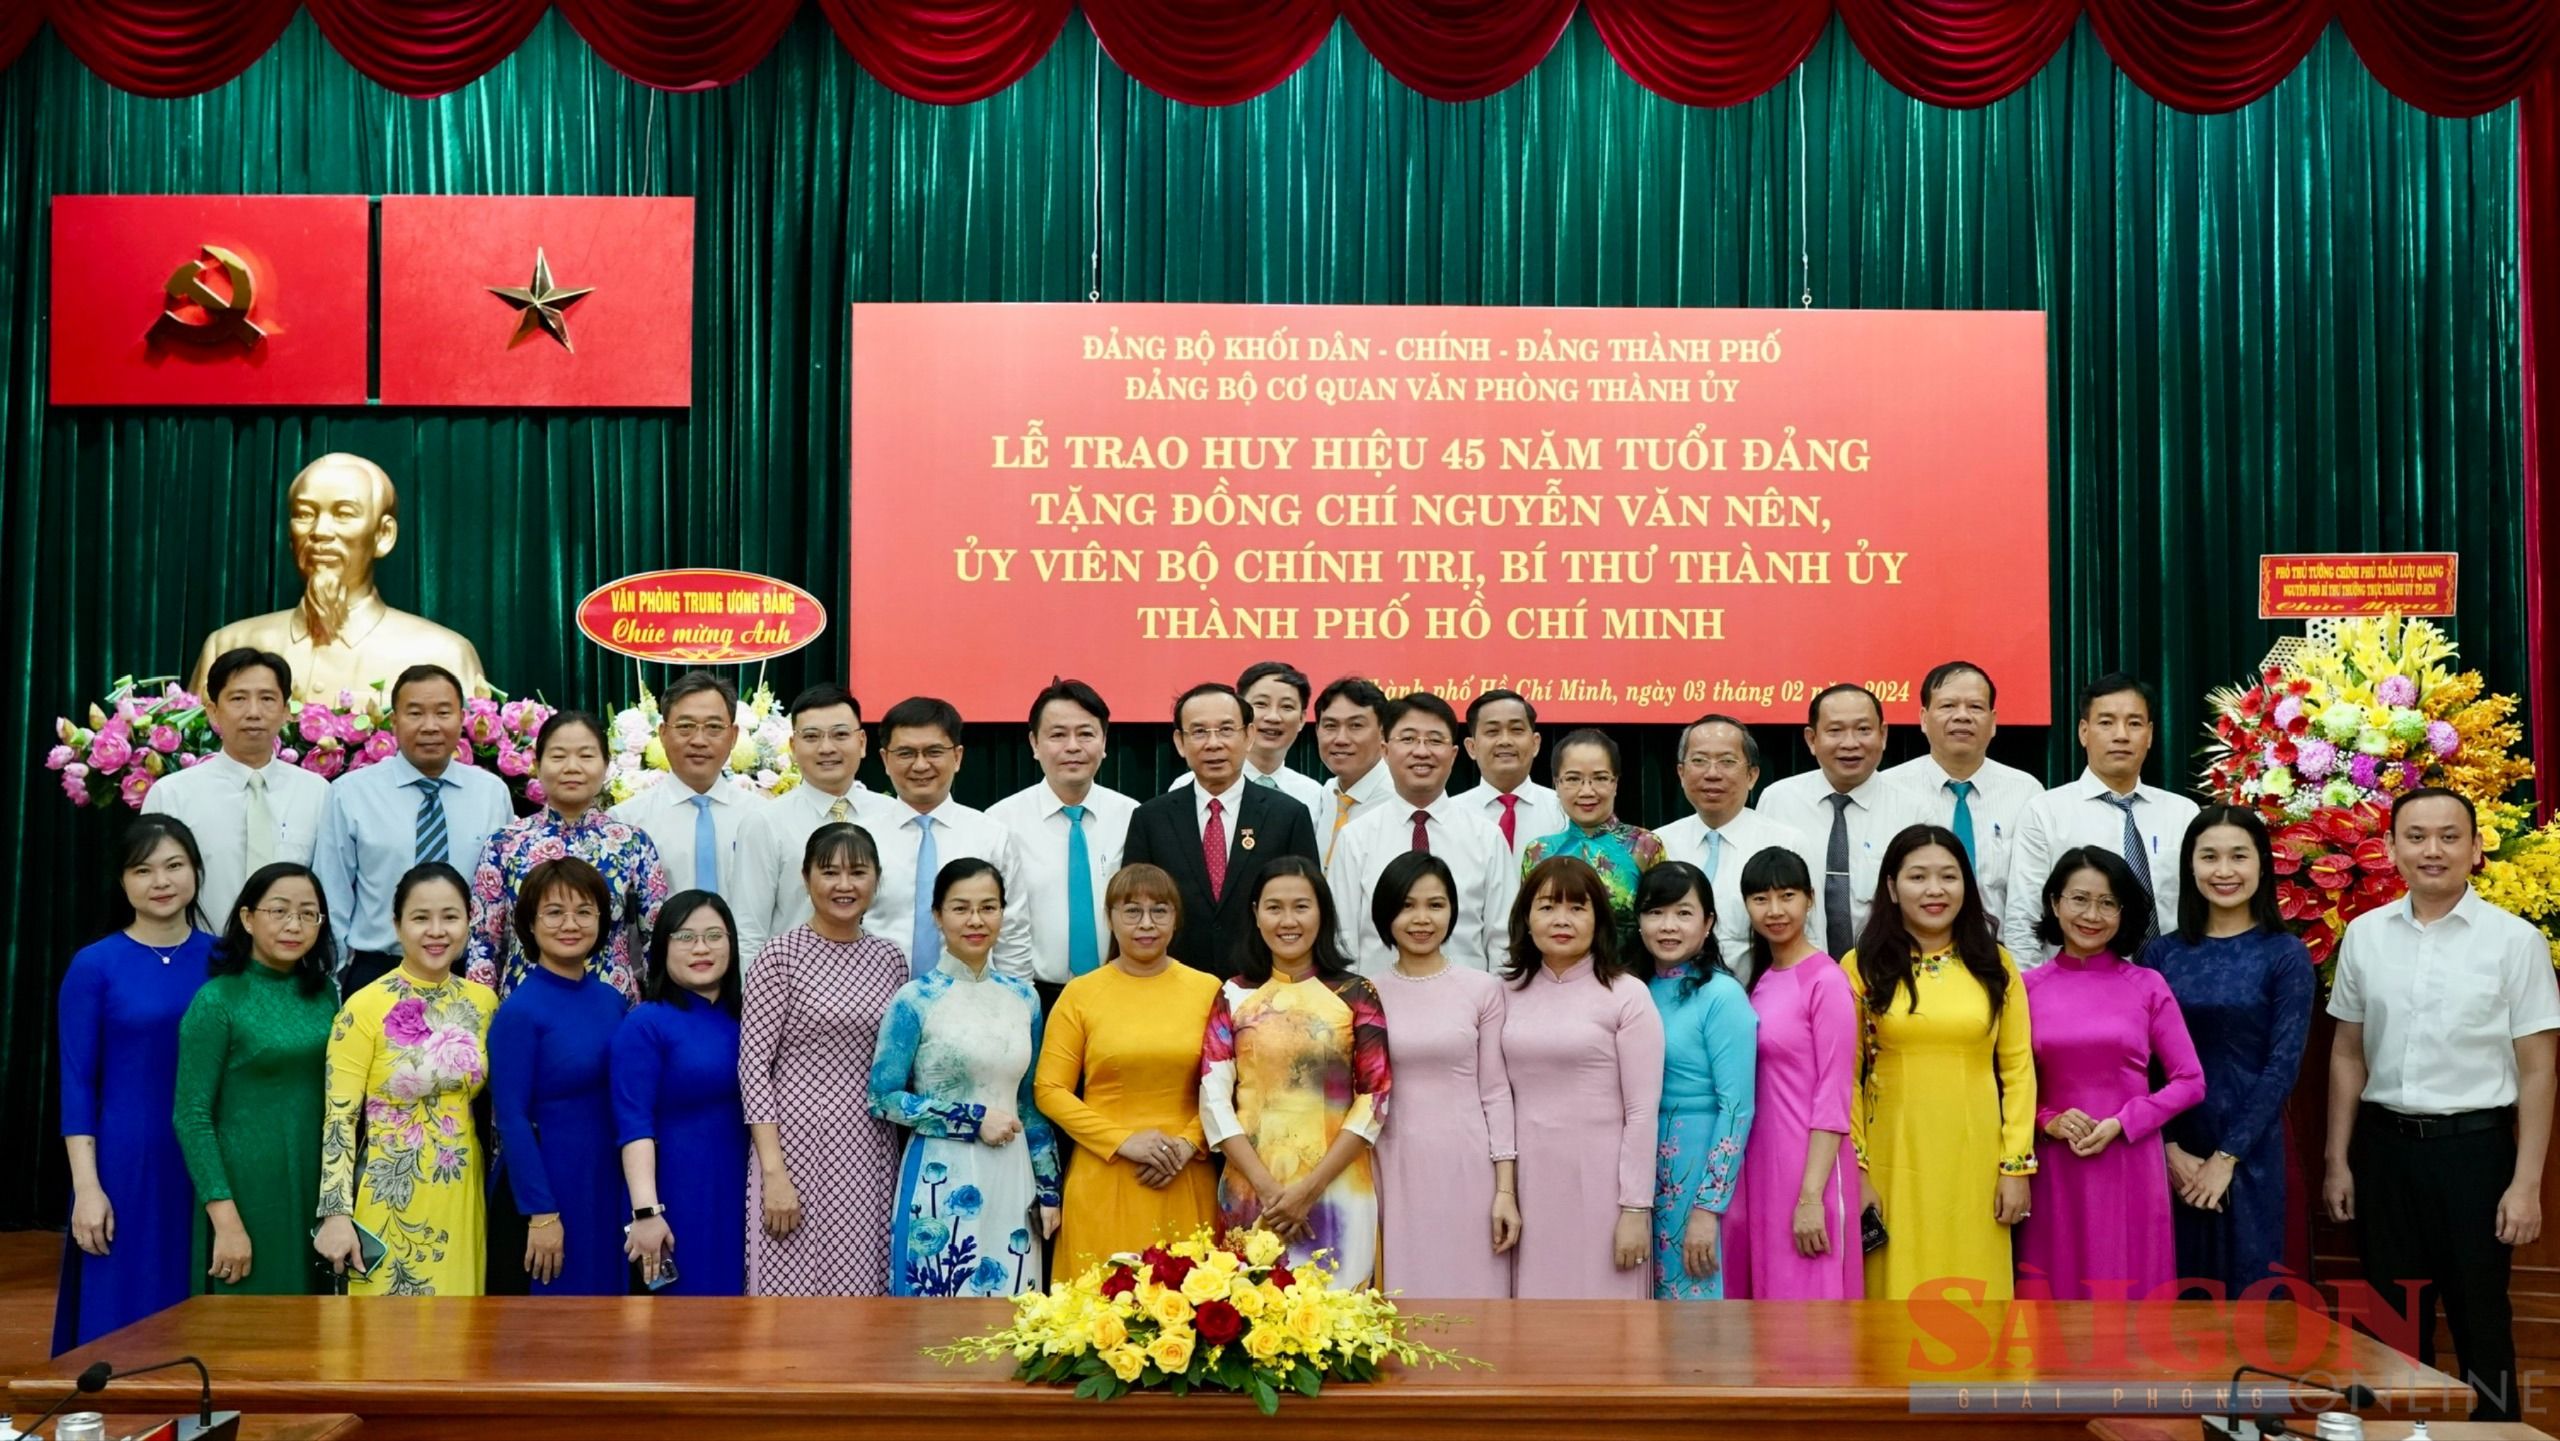 5-Lãnh đạo, cán bộ, công chức Văn phòng Thành ủy TPHCM chúc mừng đồng chí Nguyễn Văn Nên (Ảnh: Hoàng Hùng).